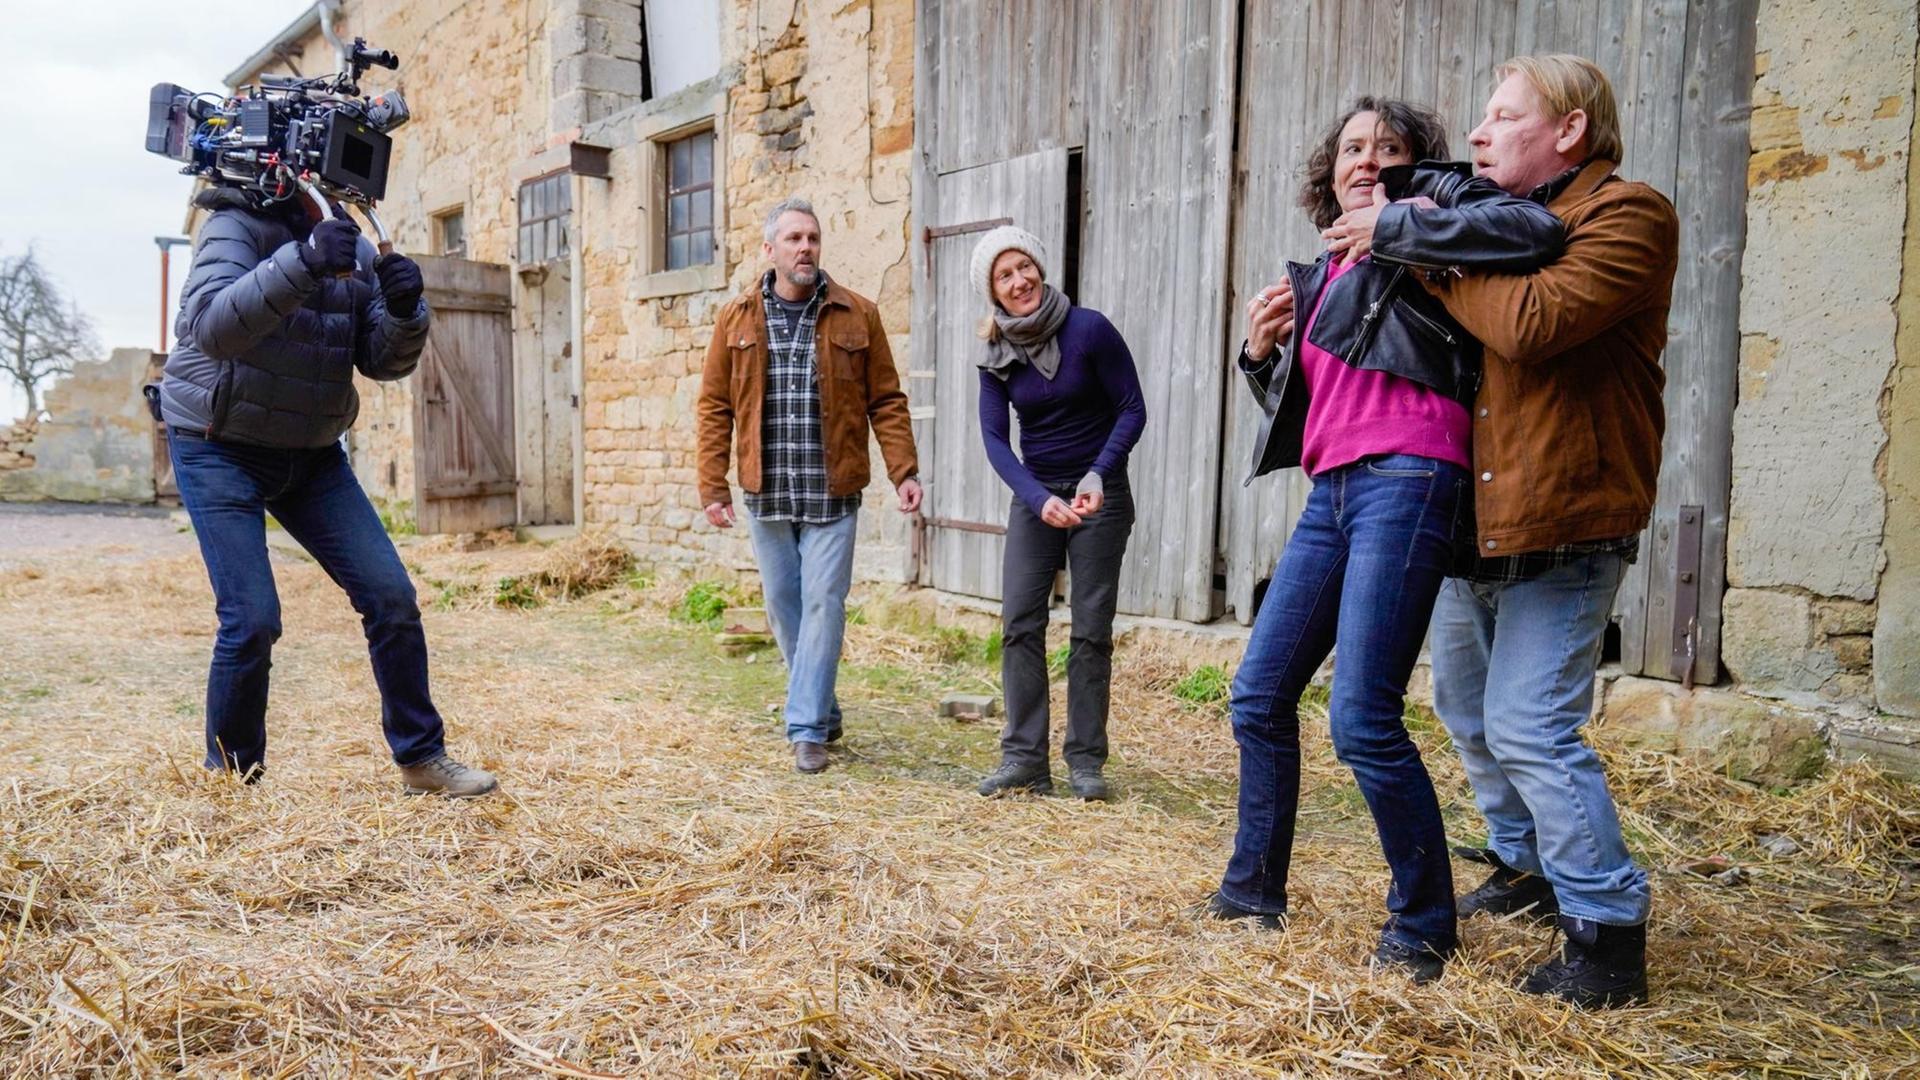 Vier Schauspieler proben bei Dreharbeiten zur Krimi-Serie "Tatort" eine Szene in einem Bauernhof.